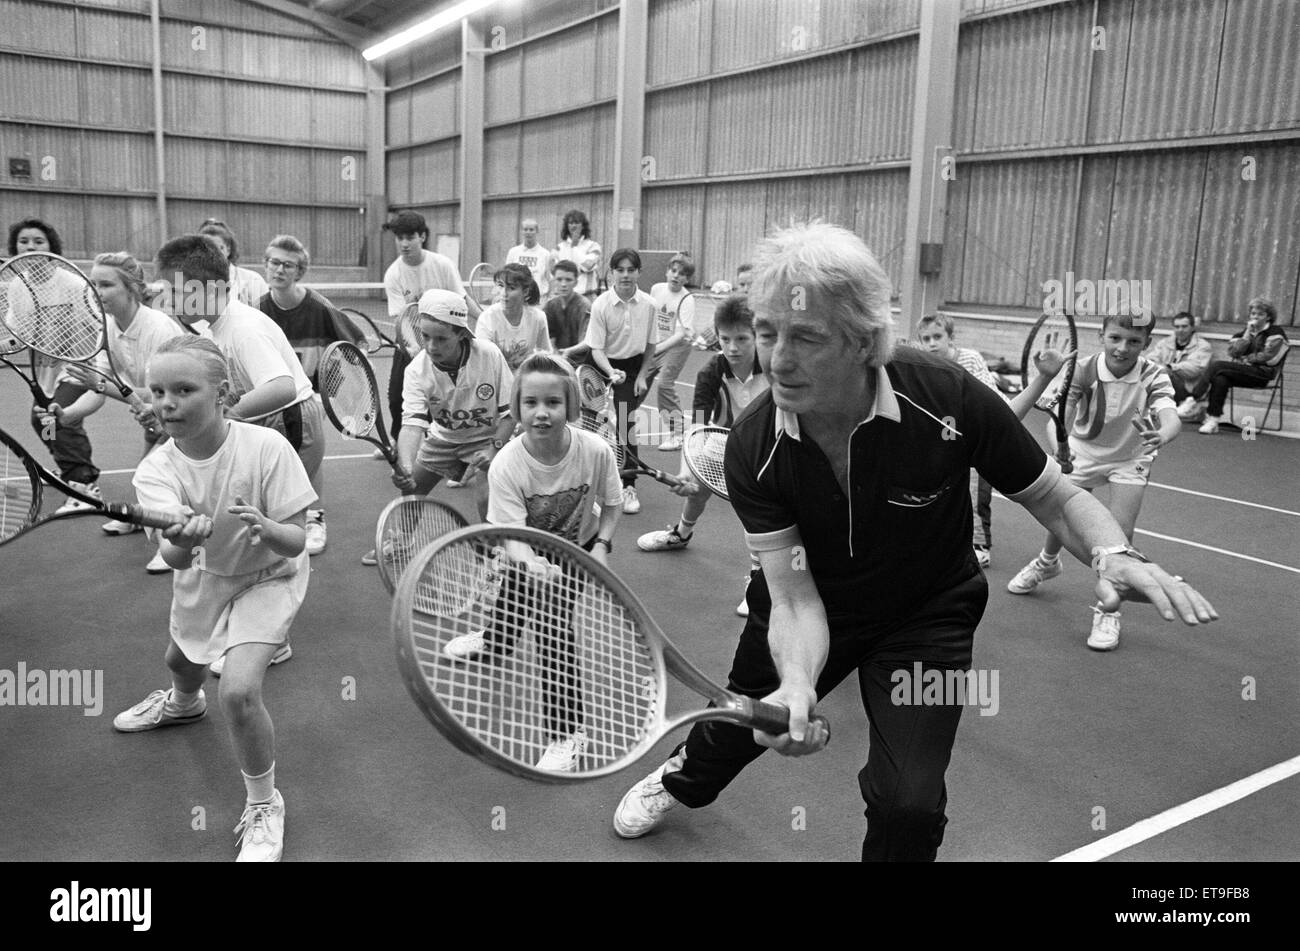 Len Heppell, der Mann verantwortlich für die Umsetzung einer Feder im Schritt von Frank Bruno, Peter Shilton und Joe Durie, statt eine Tennis-Bewegung-Klinik für Junioren in Huddersfield Lawn Tennis und Squash Club. Die Hexham-basierte Heppell, die als die Worl anerkannt ist Stockfoto